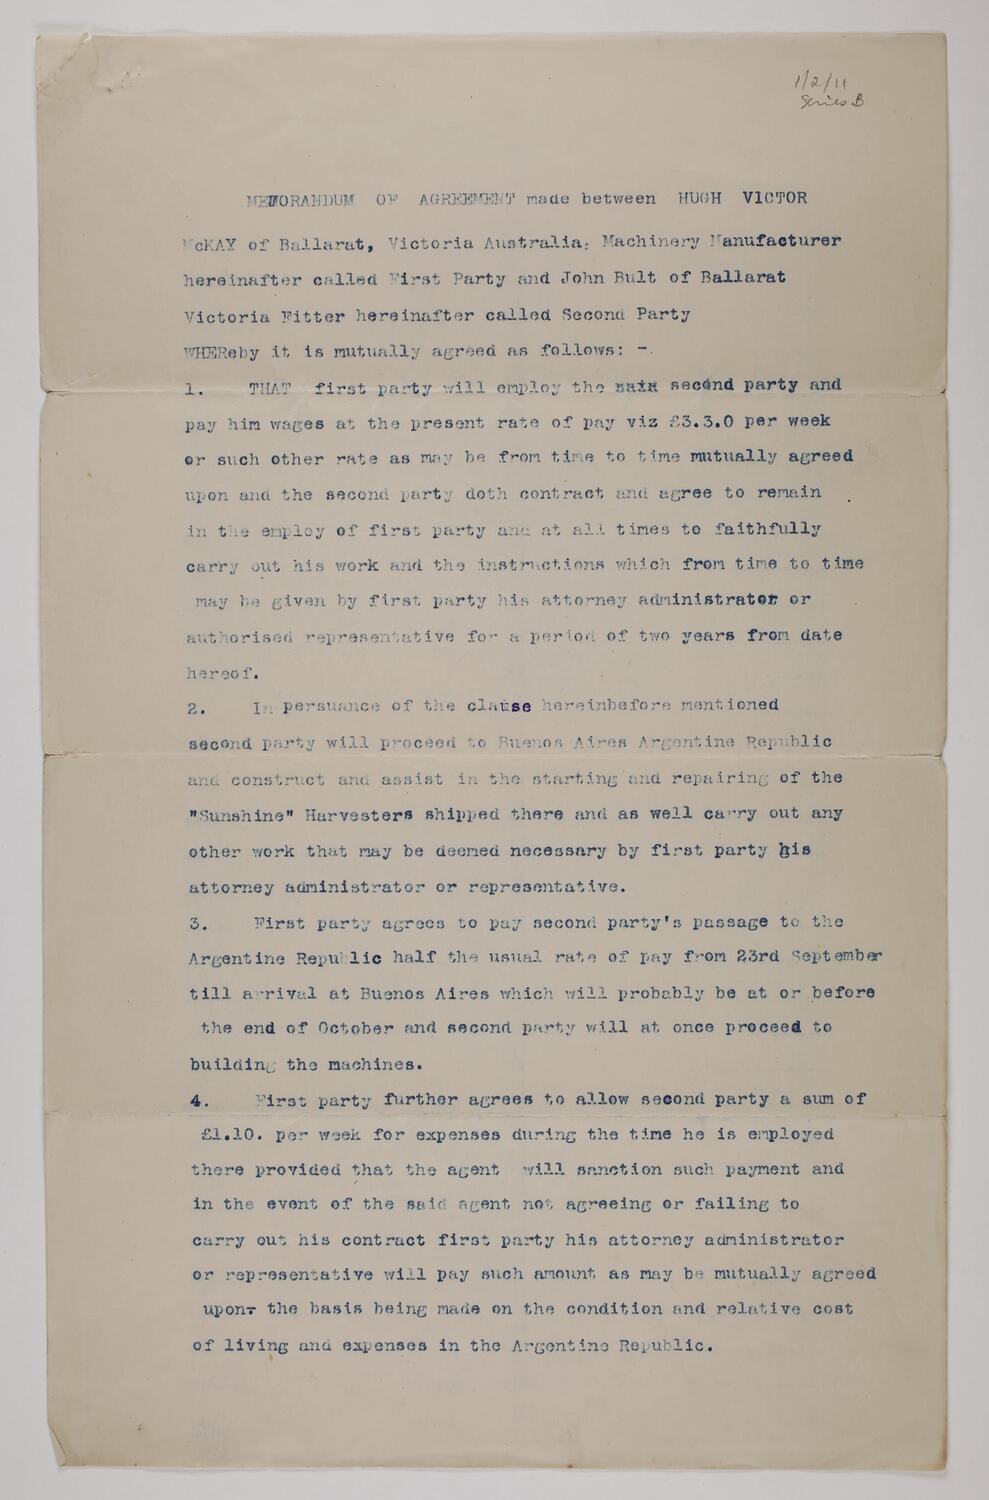 Copy of Memorandum of Agreement - H.V. McKay & John Bult ...